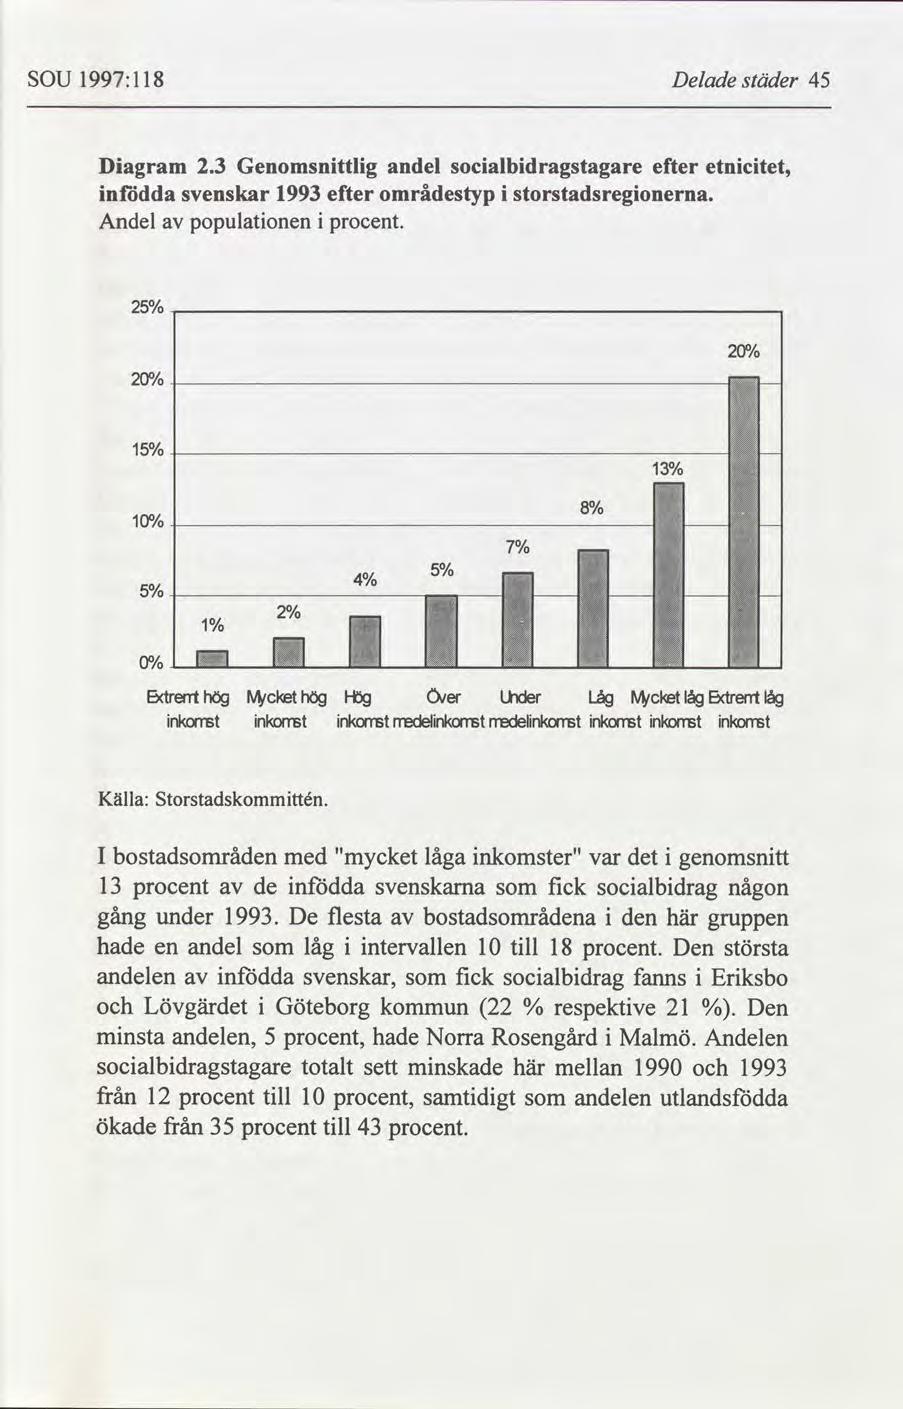 SOU 1997:118 Delade städer 45 Diagram 2.3 Genomsnittlig andel socialbidragstagare efter etnicitet, infödda svenskar 1993 efter områdestyp i storstadsregionerna. Andel populationen i procent.